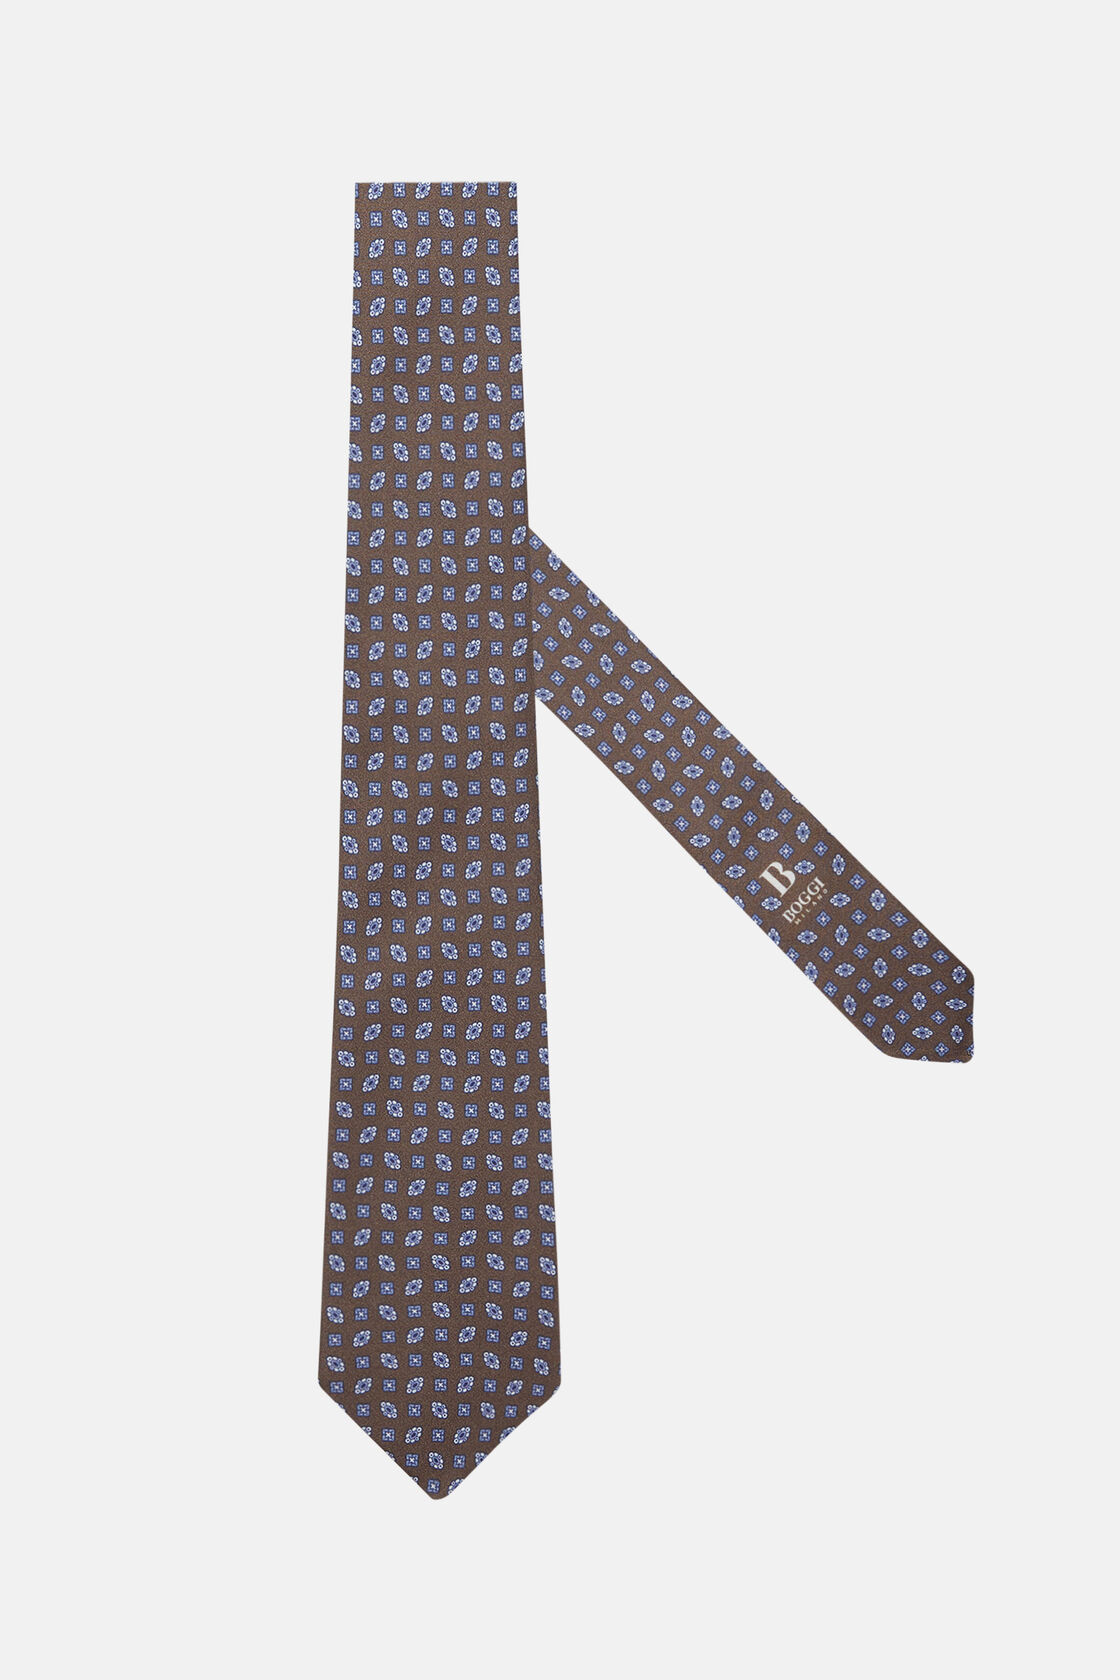 Μεταξωτή γραβάτα με γεωμετρικό σχέδιο, Brown, hi-res